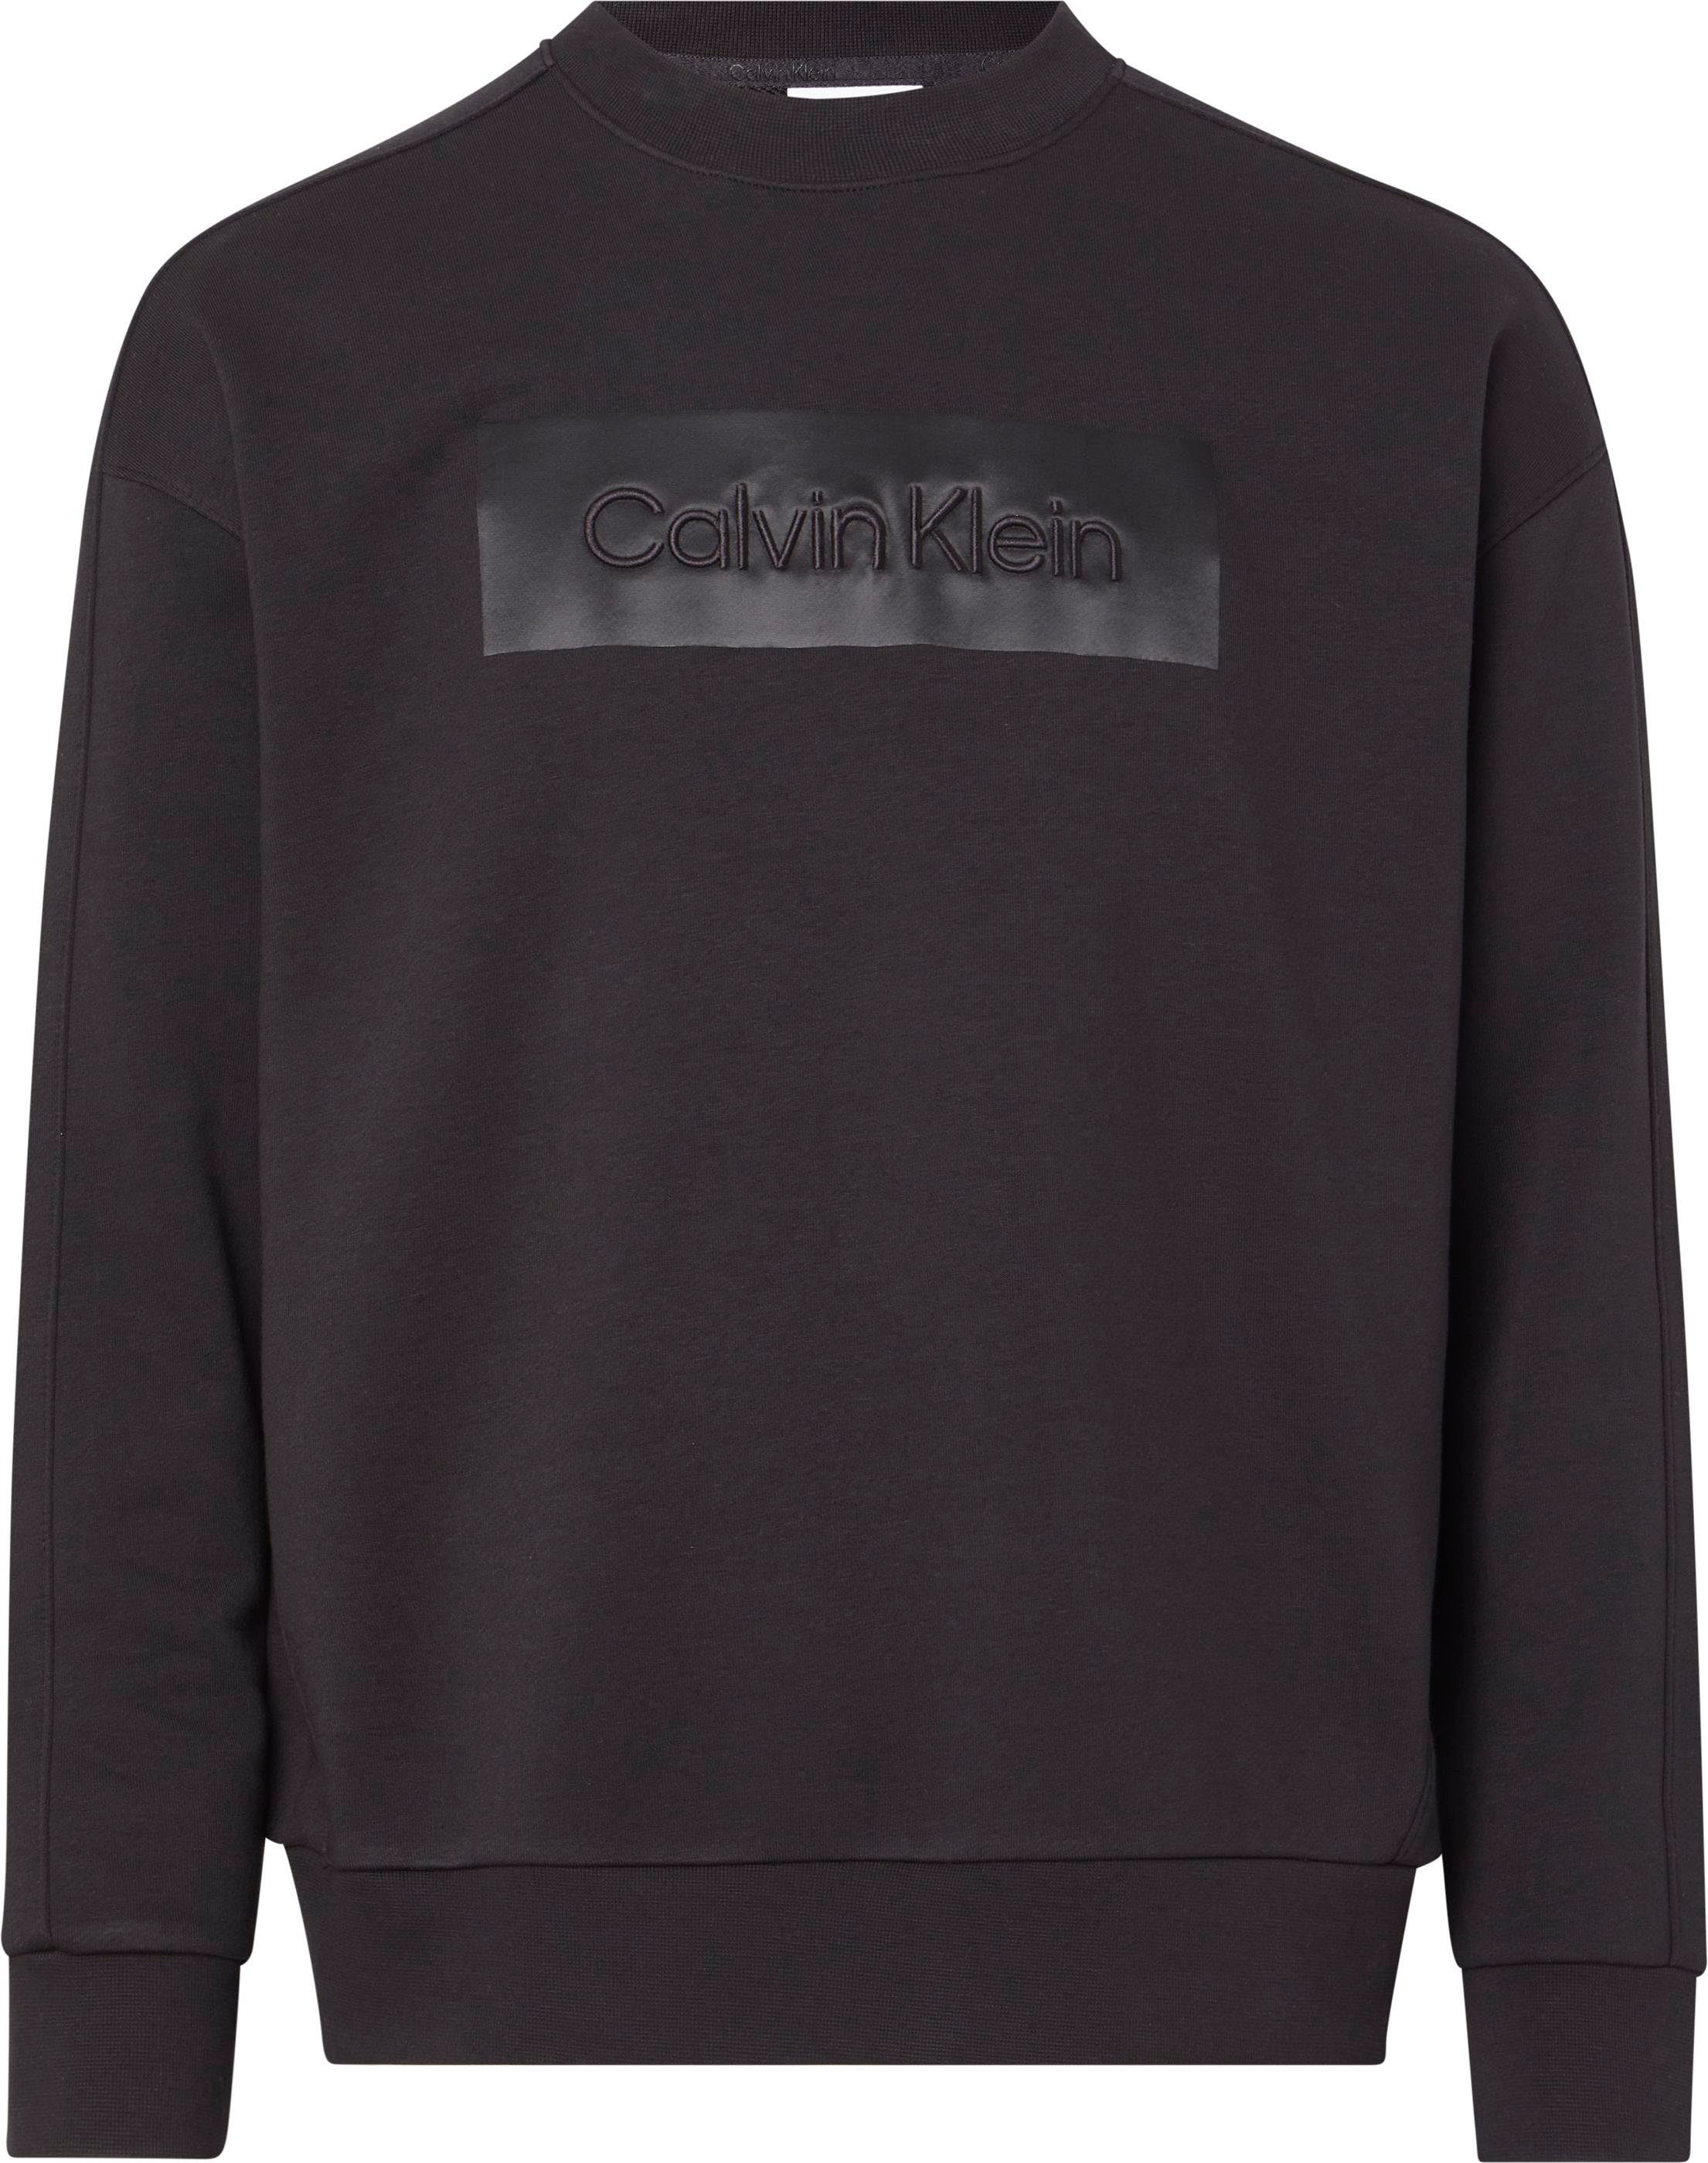 Logoschriftzug Calvin BT-EMBROIDERED COMFORT auf Klein HOODIE Sweatshirt der Brust mit Big&Tall